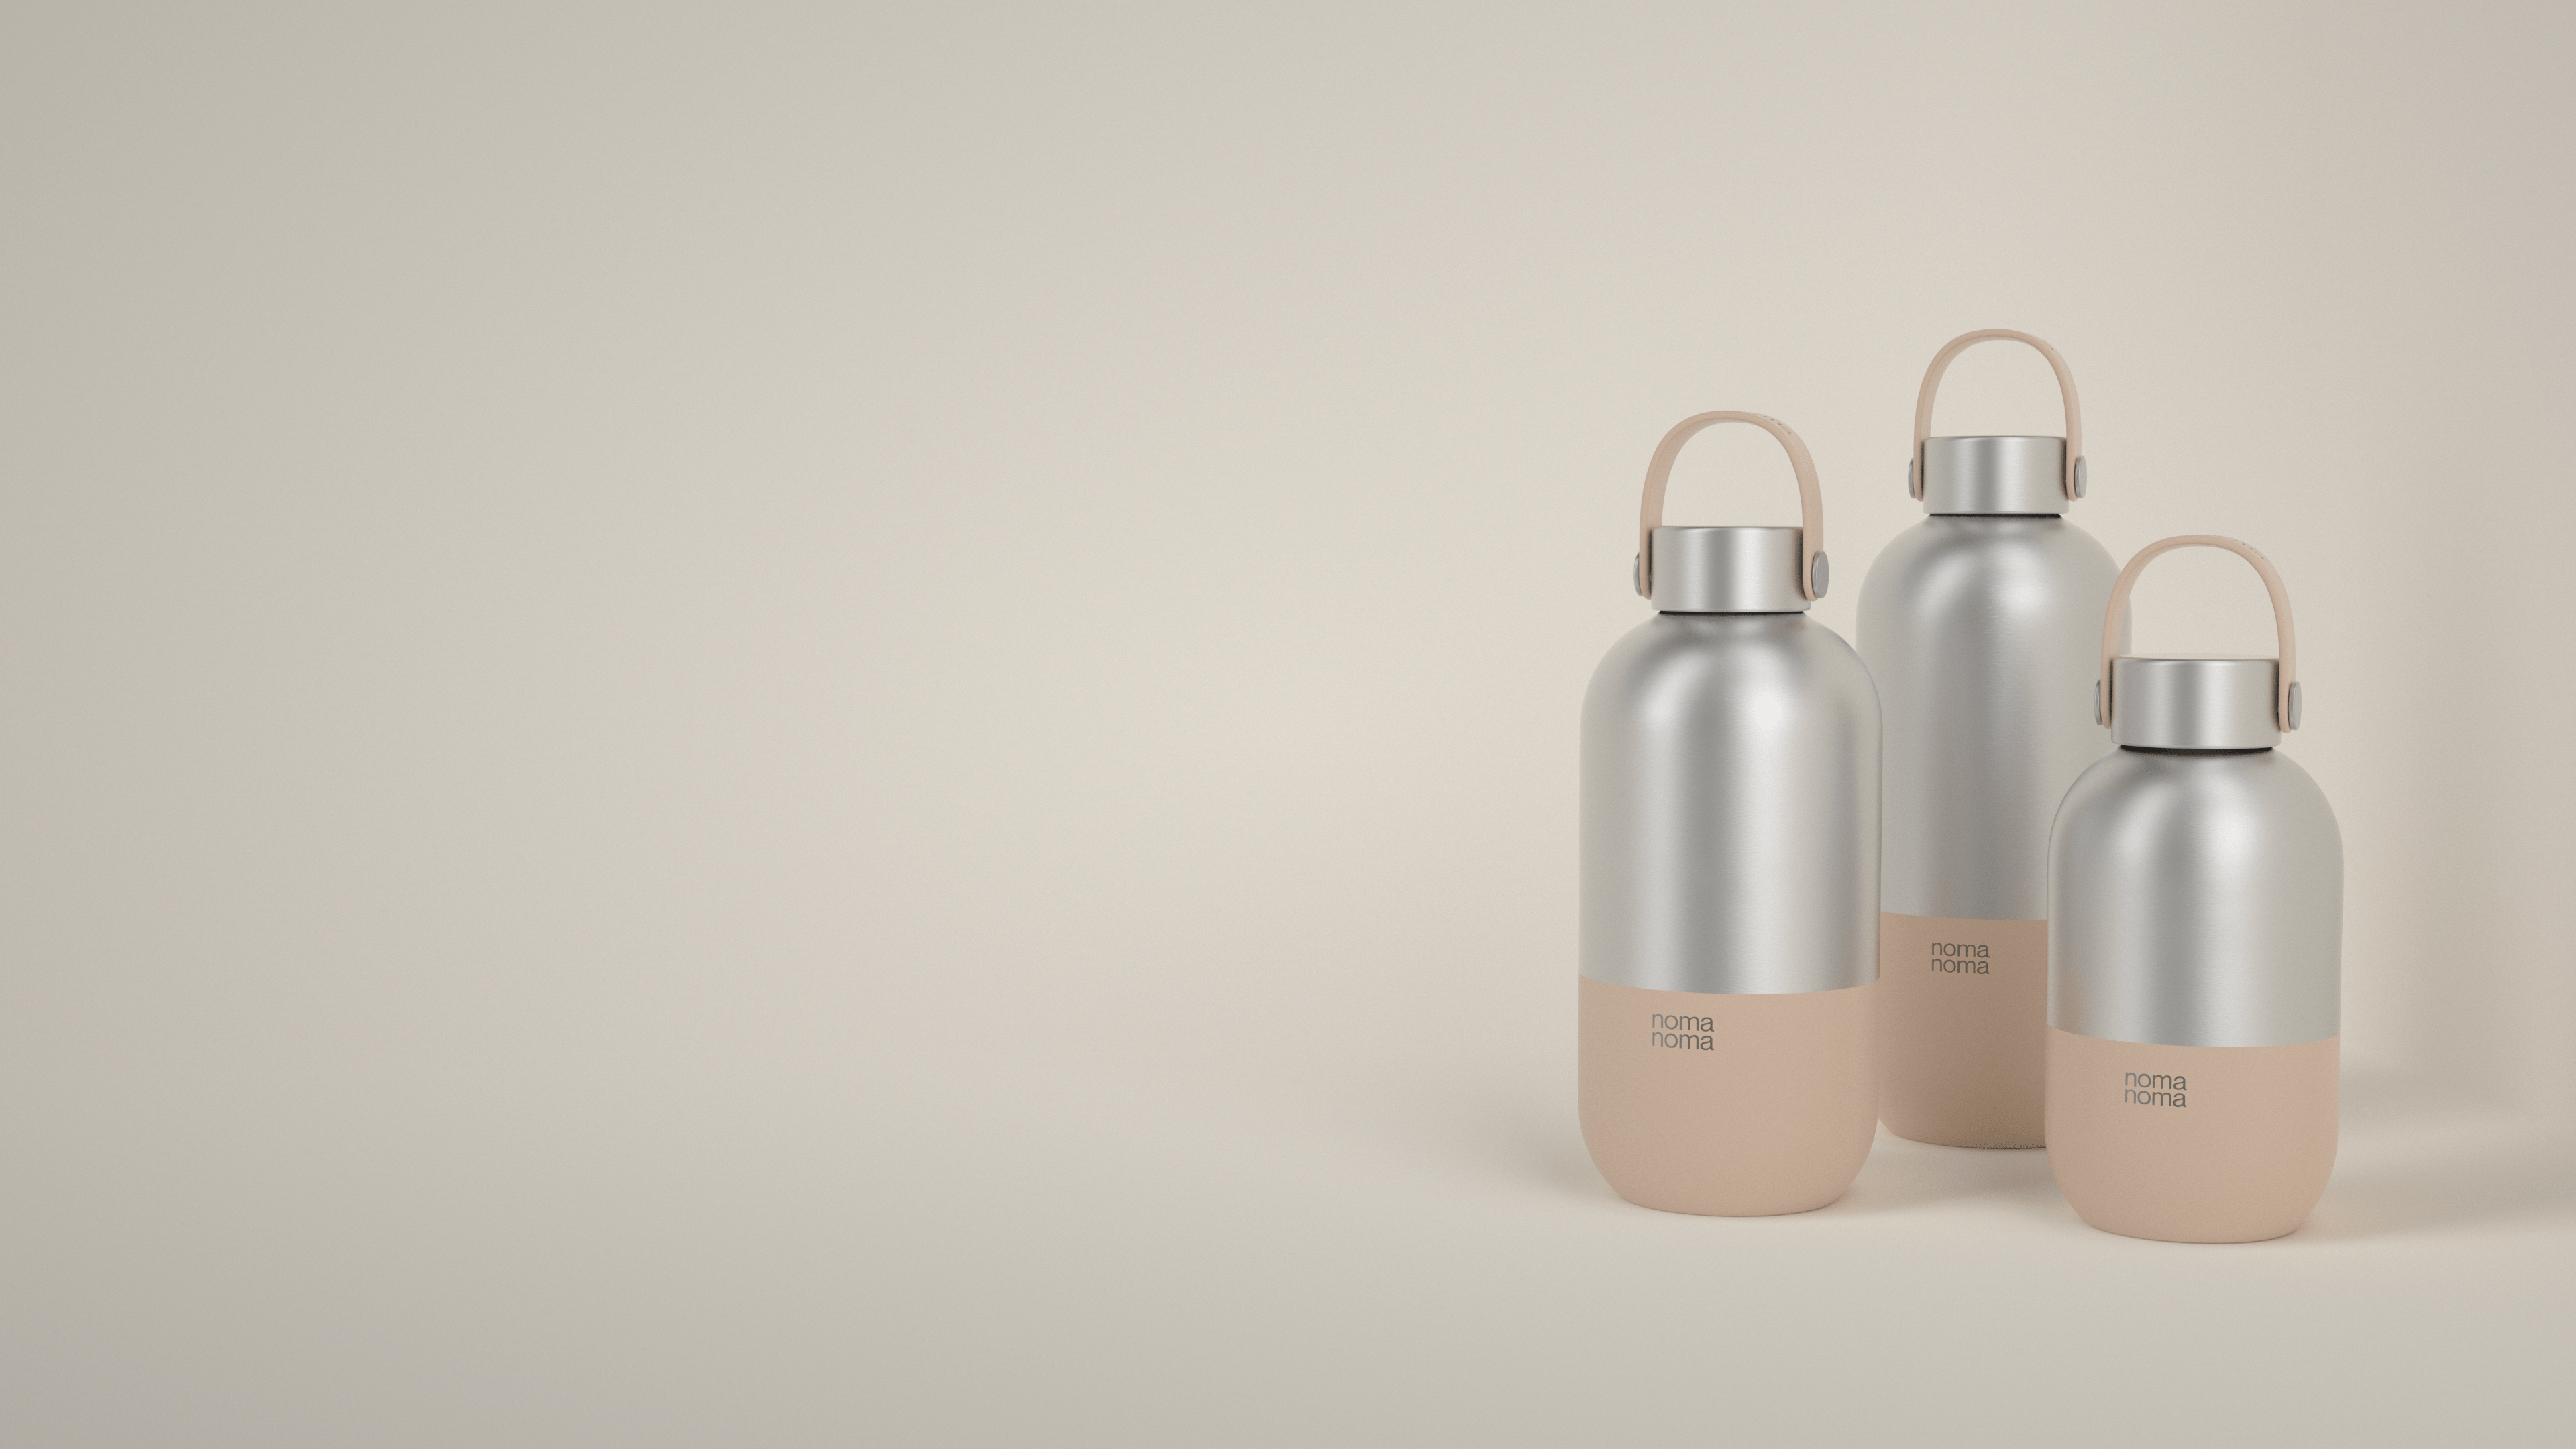 Die beige Trinkflasche von noma noma gibt es in drei praktischen Größen.